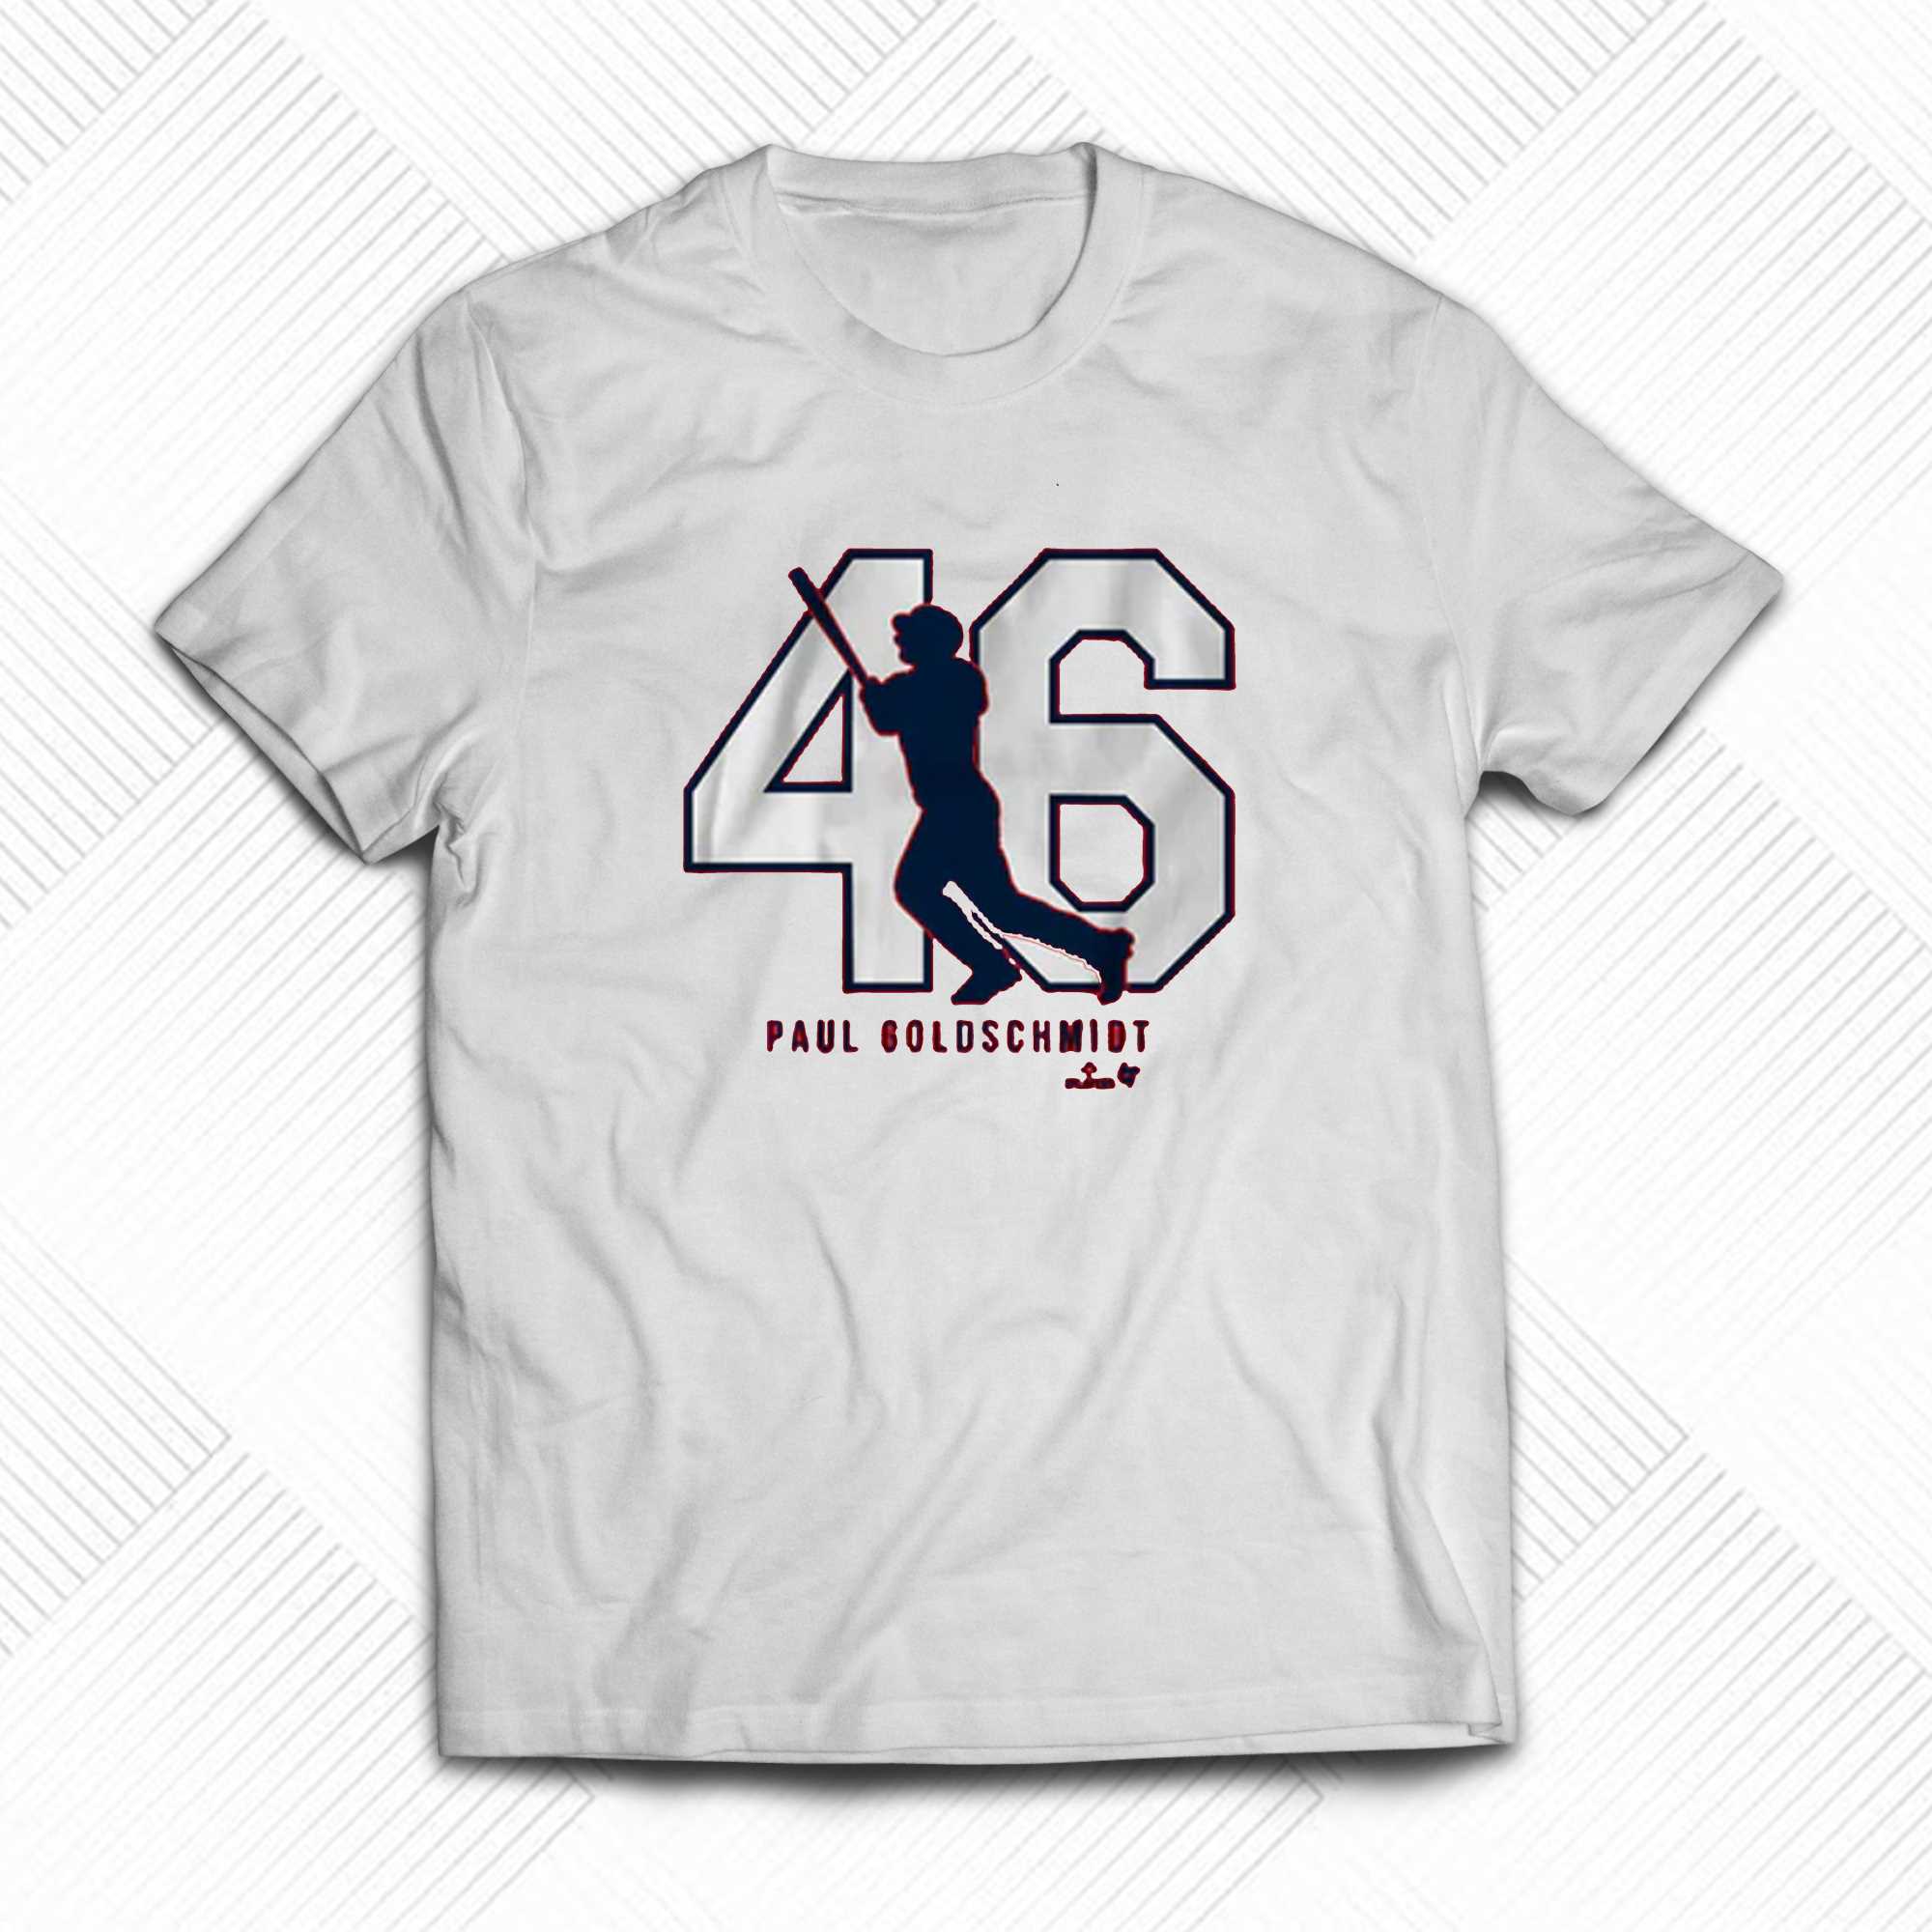 Paul Goldschmidt 46 St Louis T-shirt - Shibtee Clothing